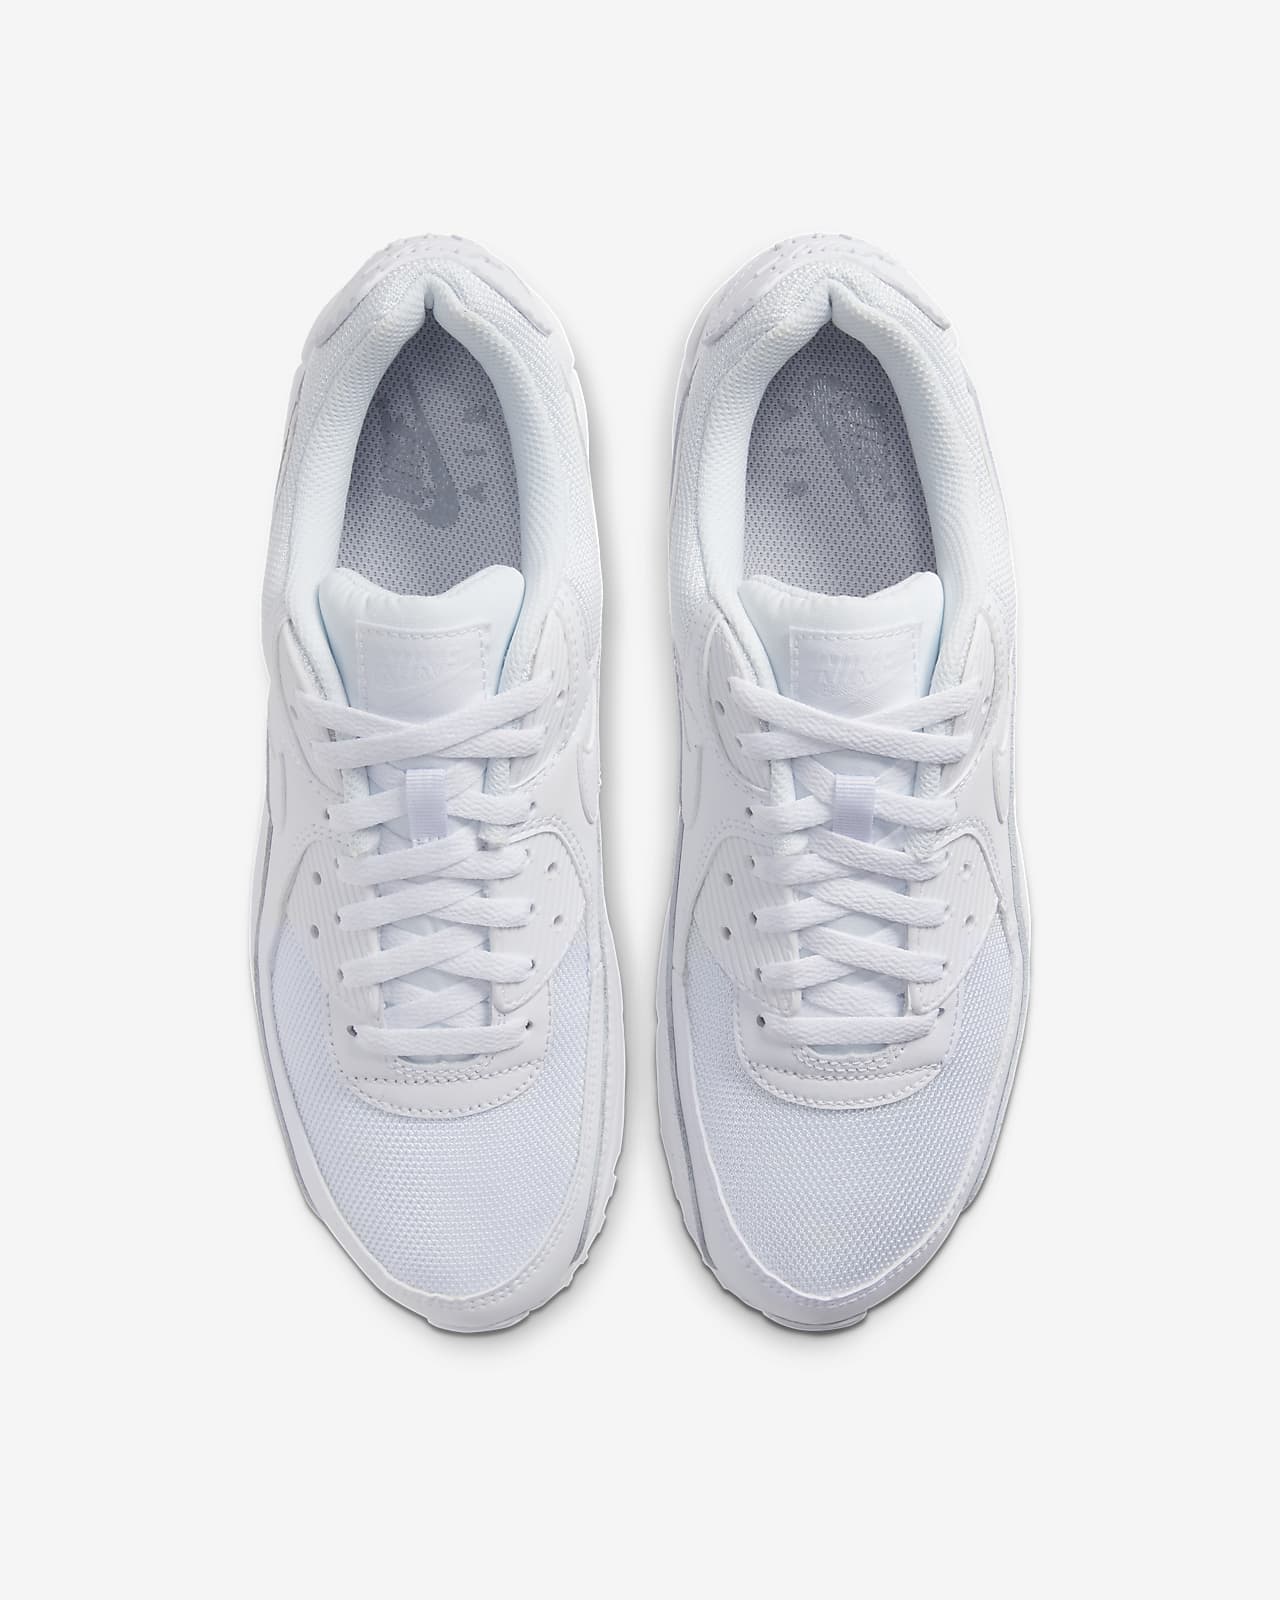 nike air max shoes white colour